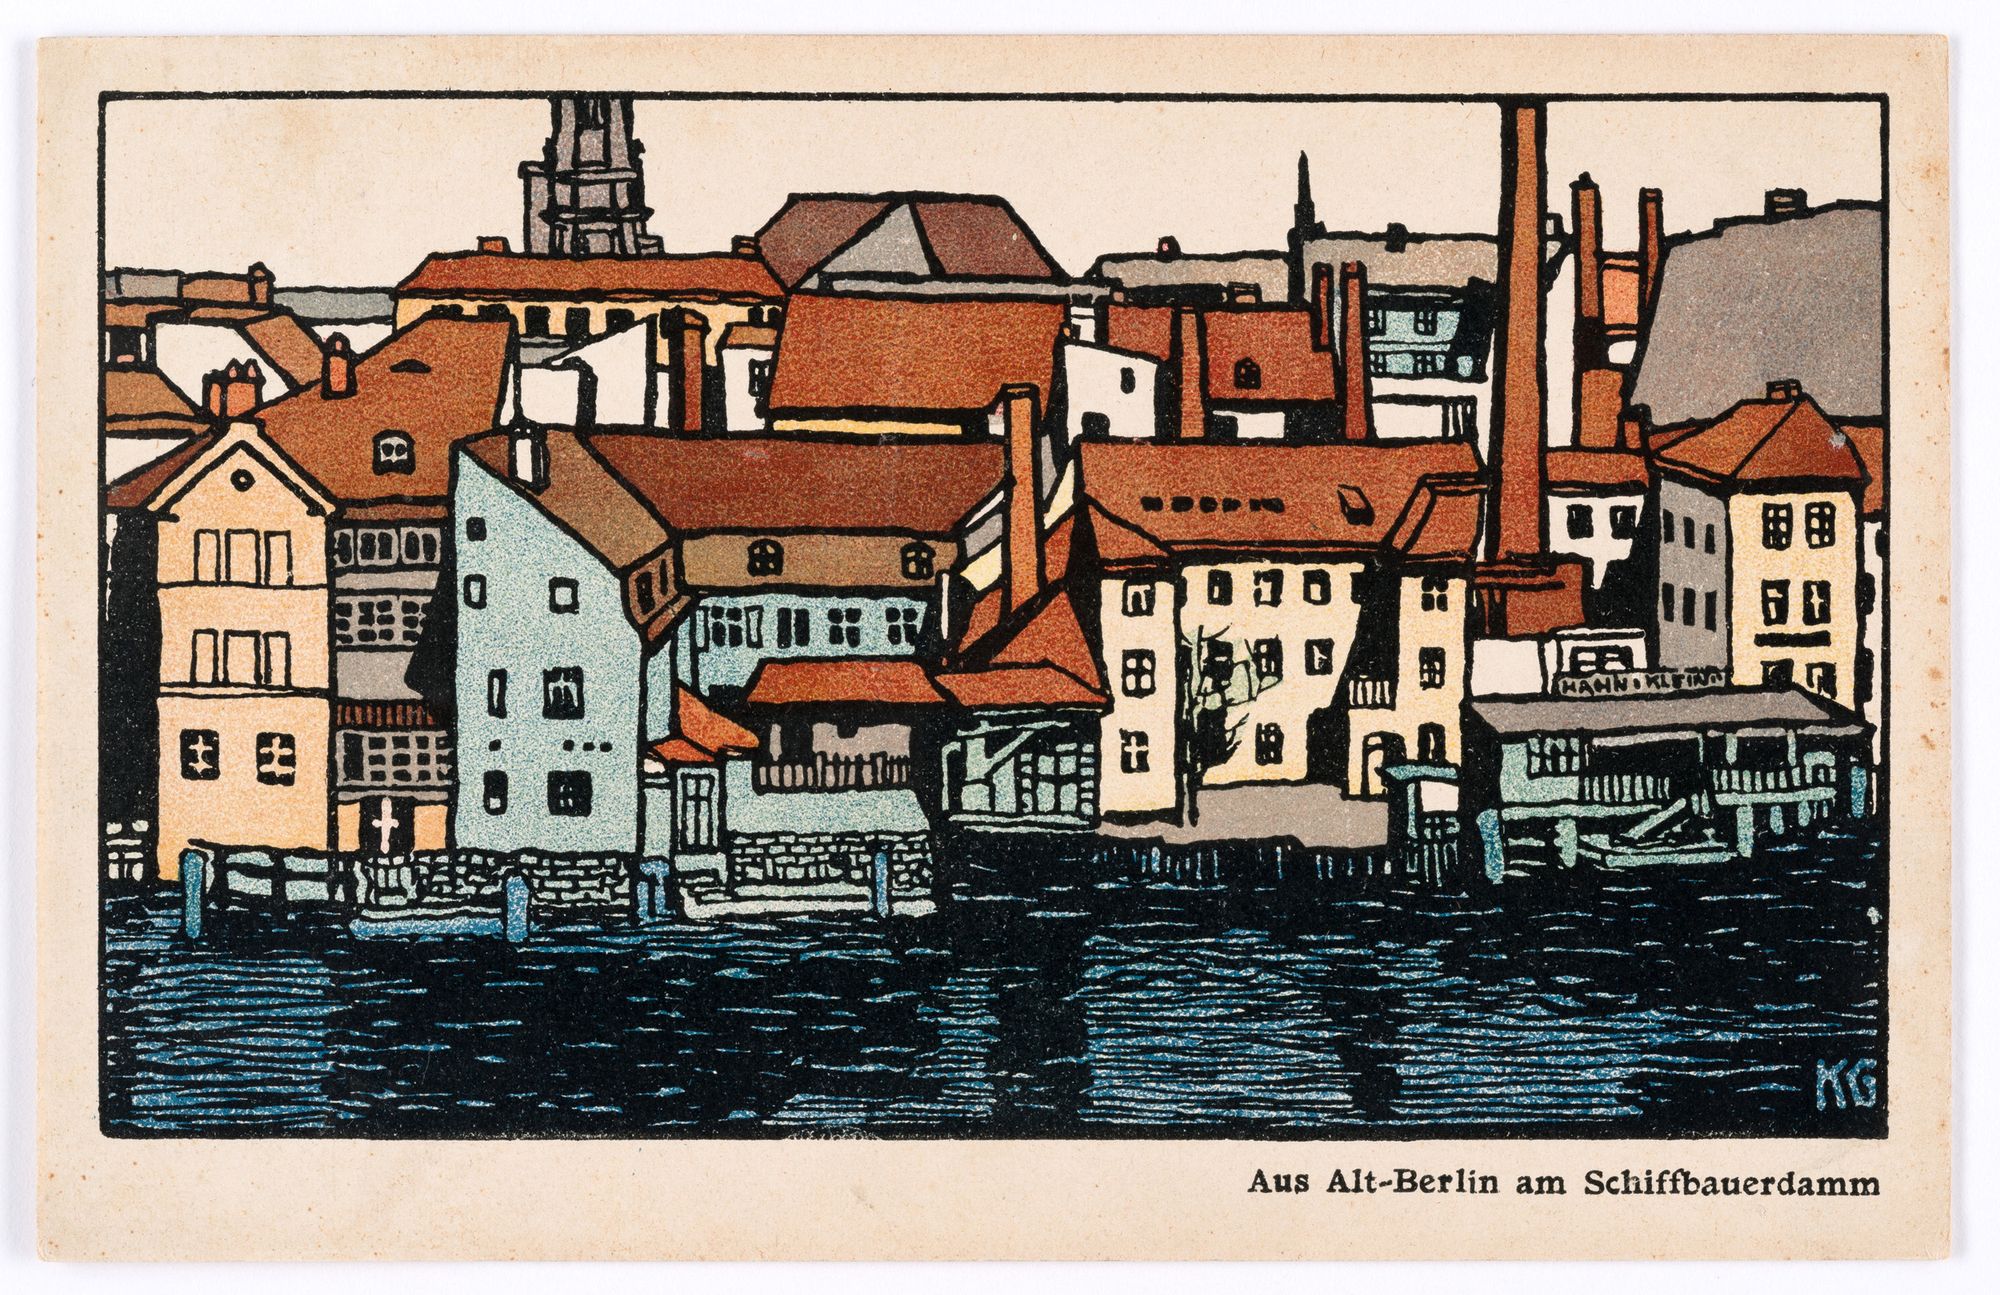 A századfordulós Berlint is láthatjuk vidám szecessziós képeslapokon